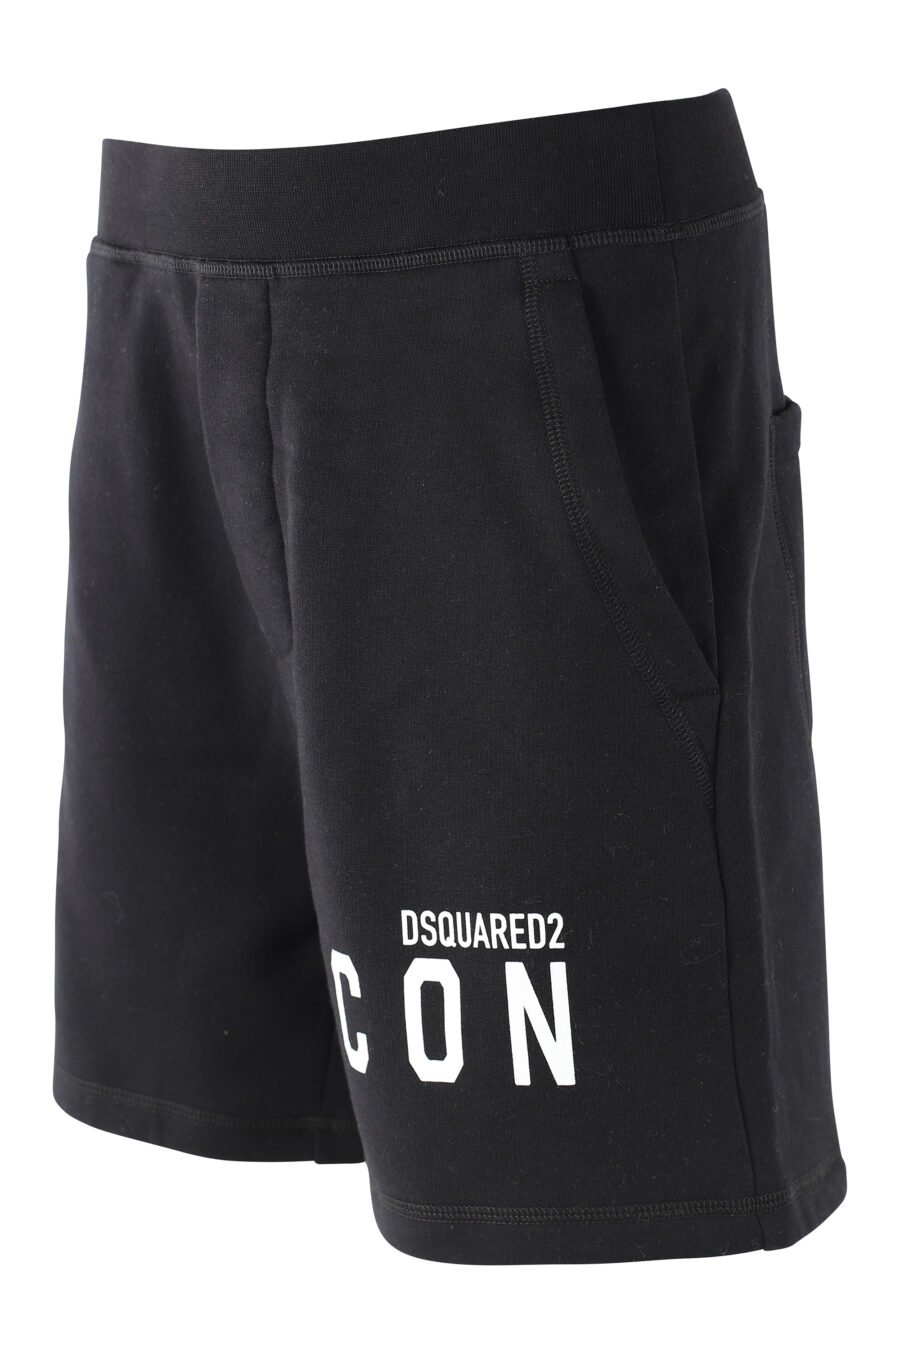 Pantalón de chándal corto negro con doble logo lateral - IMG 9712